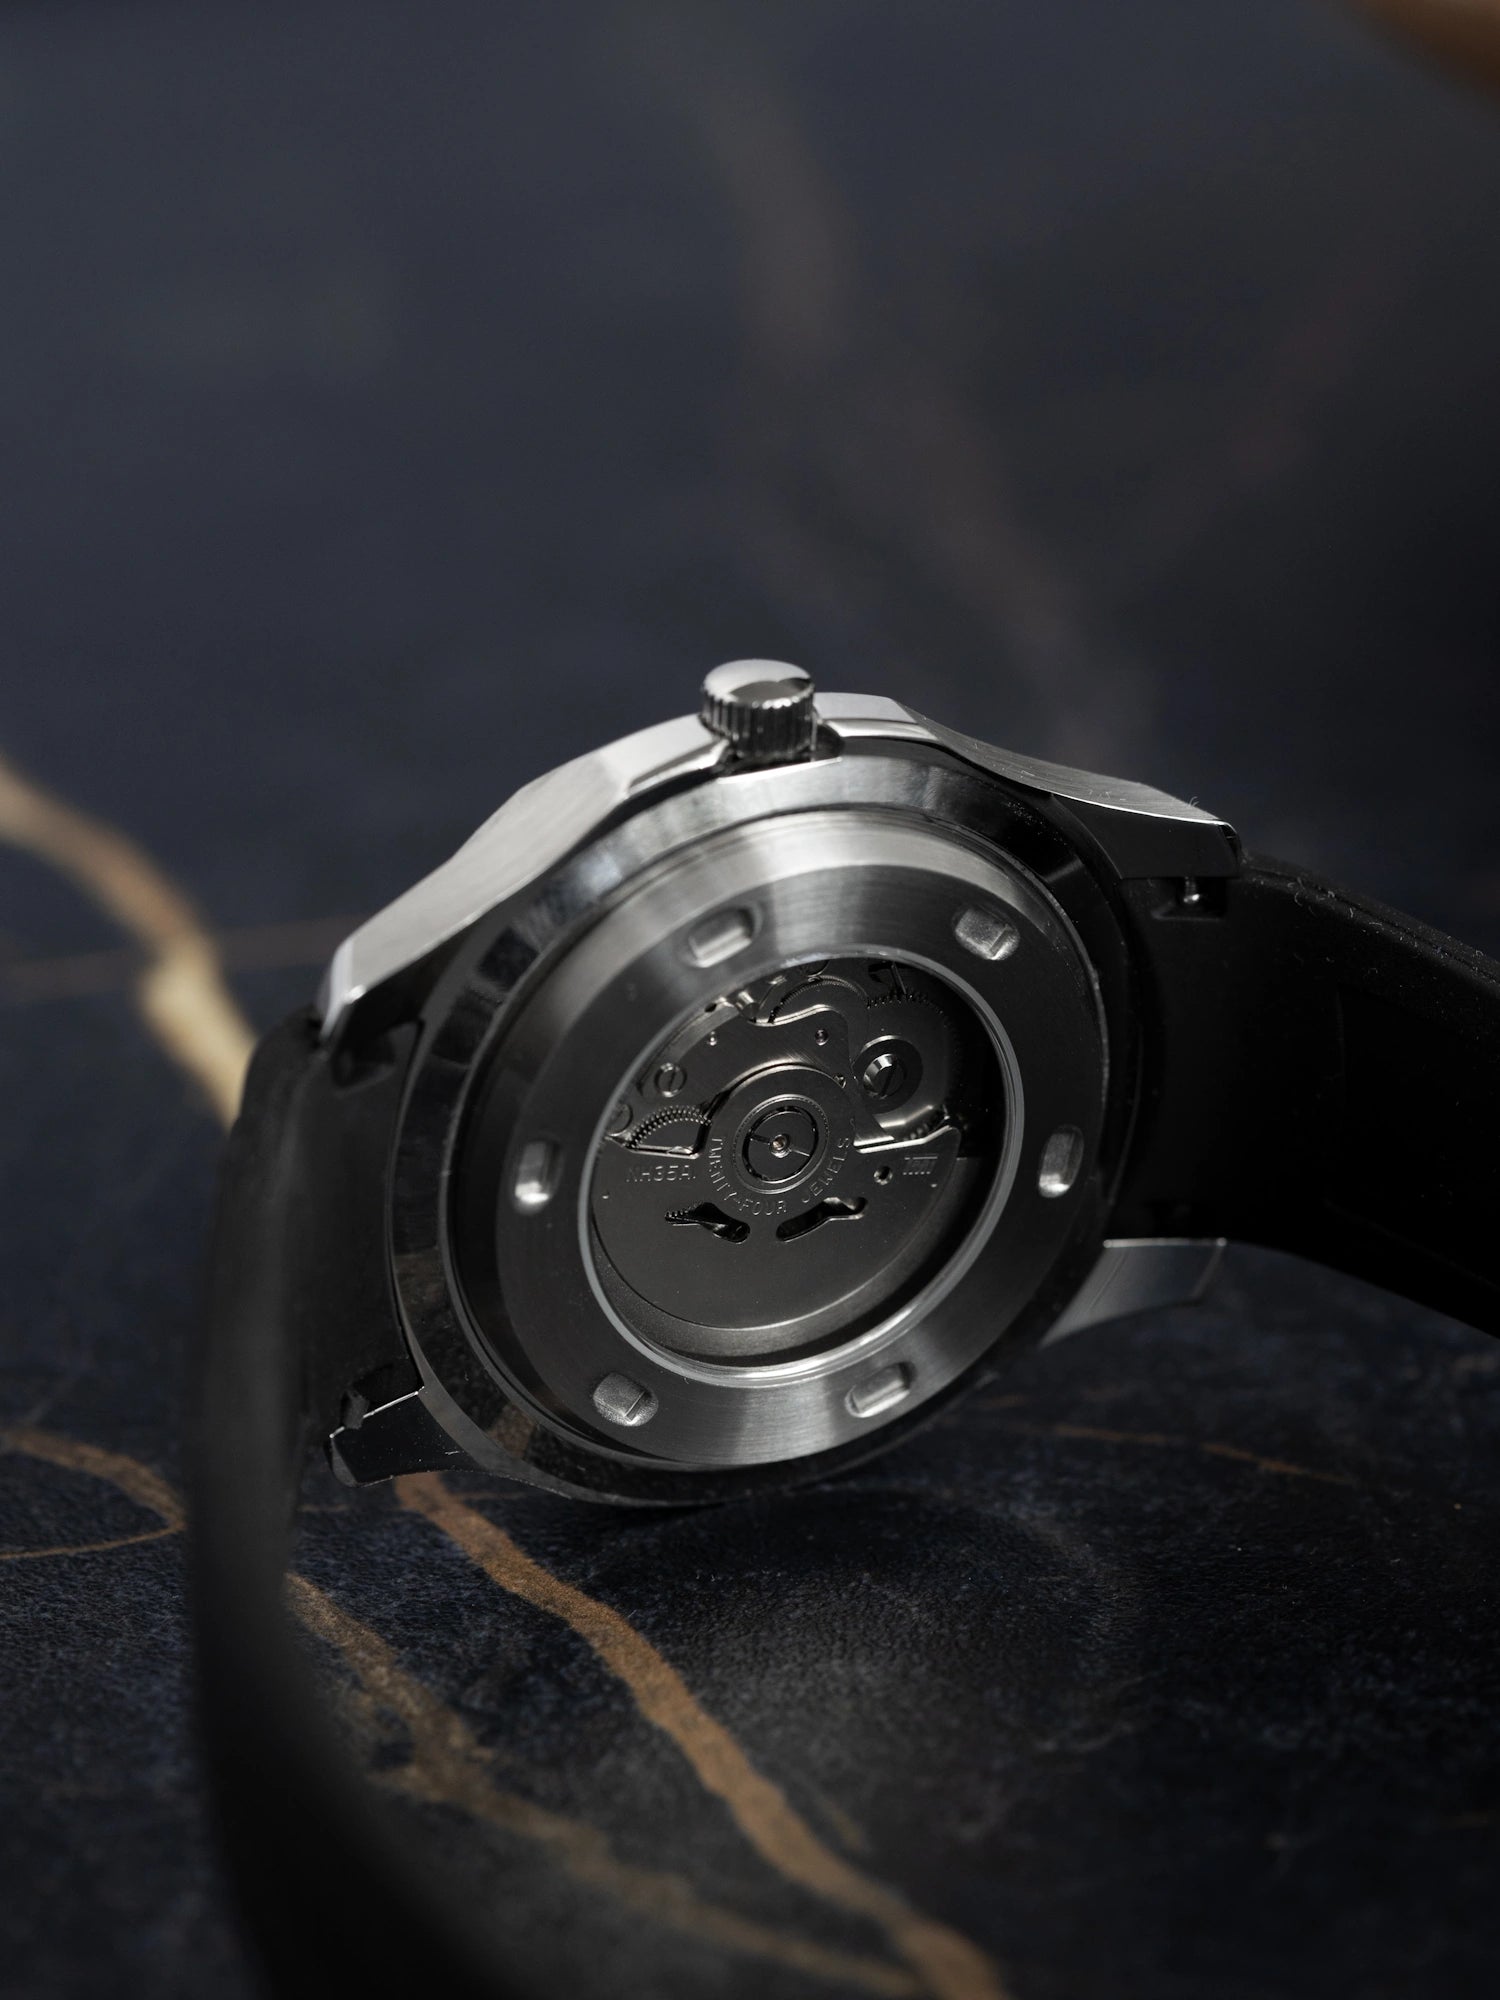 Seiko Mod Black Nautilus Watch with Silicone Strap - Aquanaut Jumbo Nautilus